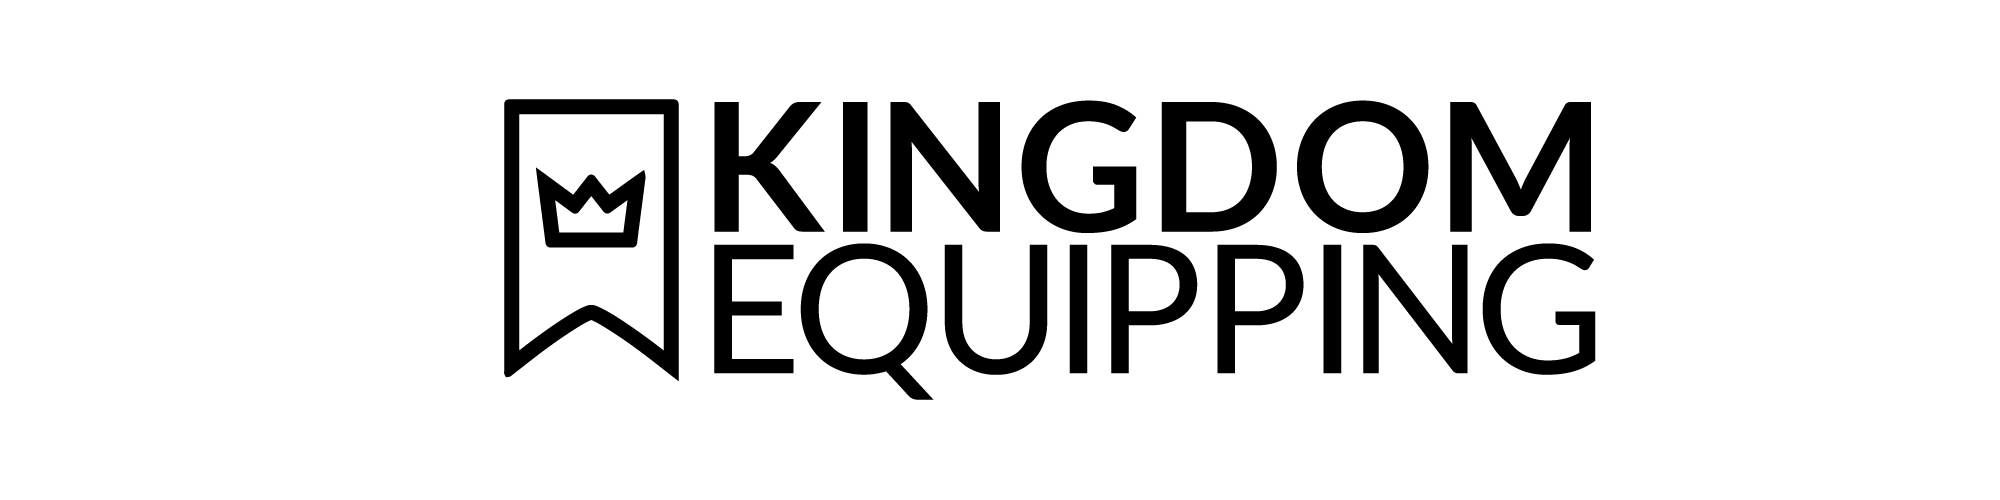 MEMBERSHIP PLANS | Kingdom Equipping